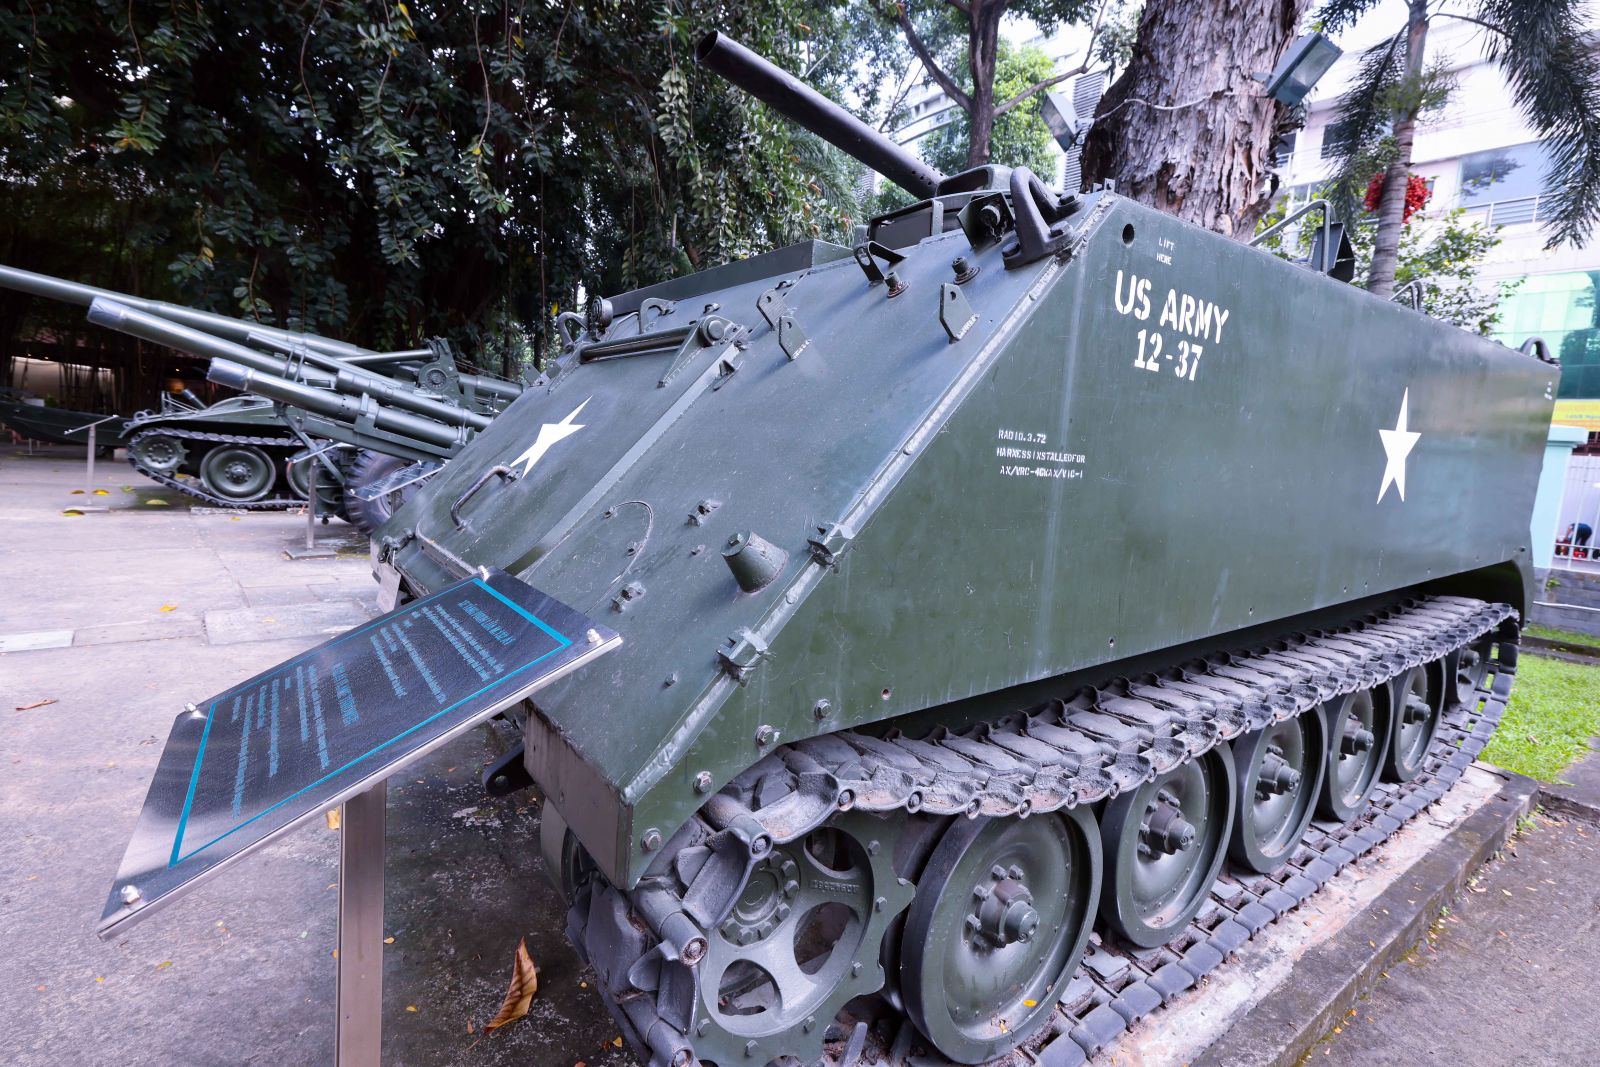 Các loại xe tăng phun lửa, xe tăng hạng nhẹ có thể chạy trên nhiều địa hình như đường nhựa, đồng ruộng, đất gồ ghề hoặc lội nước như xe tăng phun lửa mang tên M132-A1 trong ảnh.